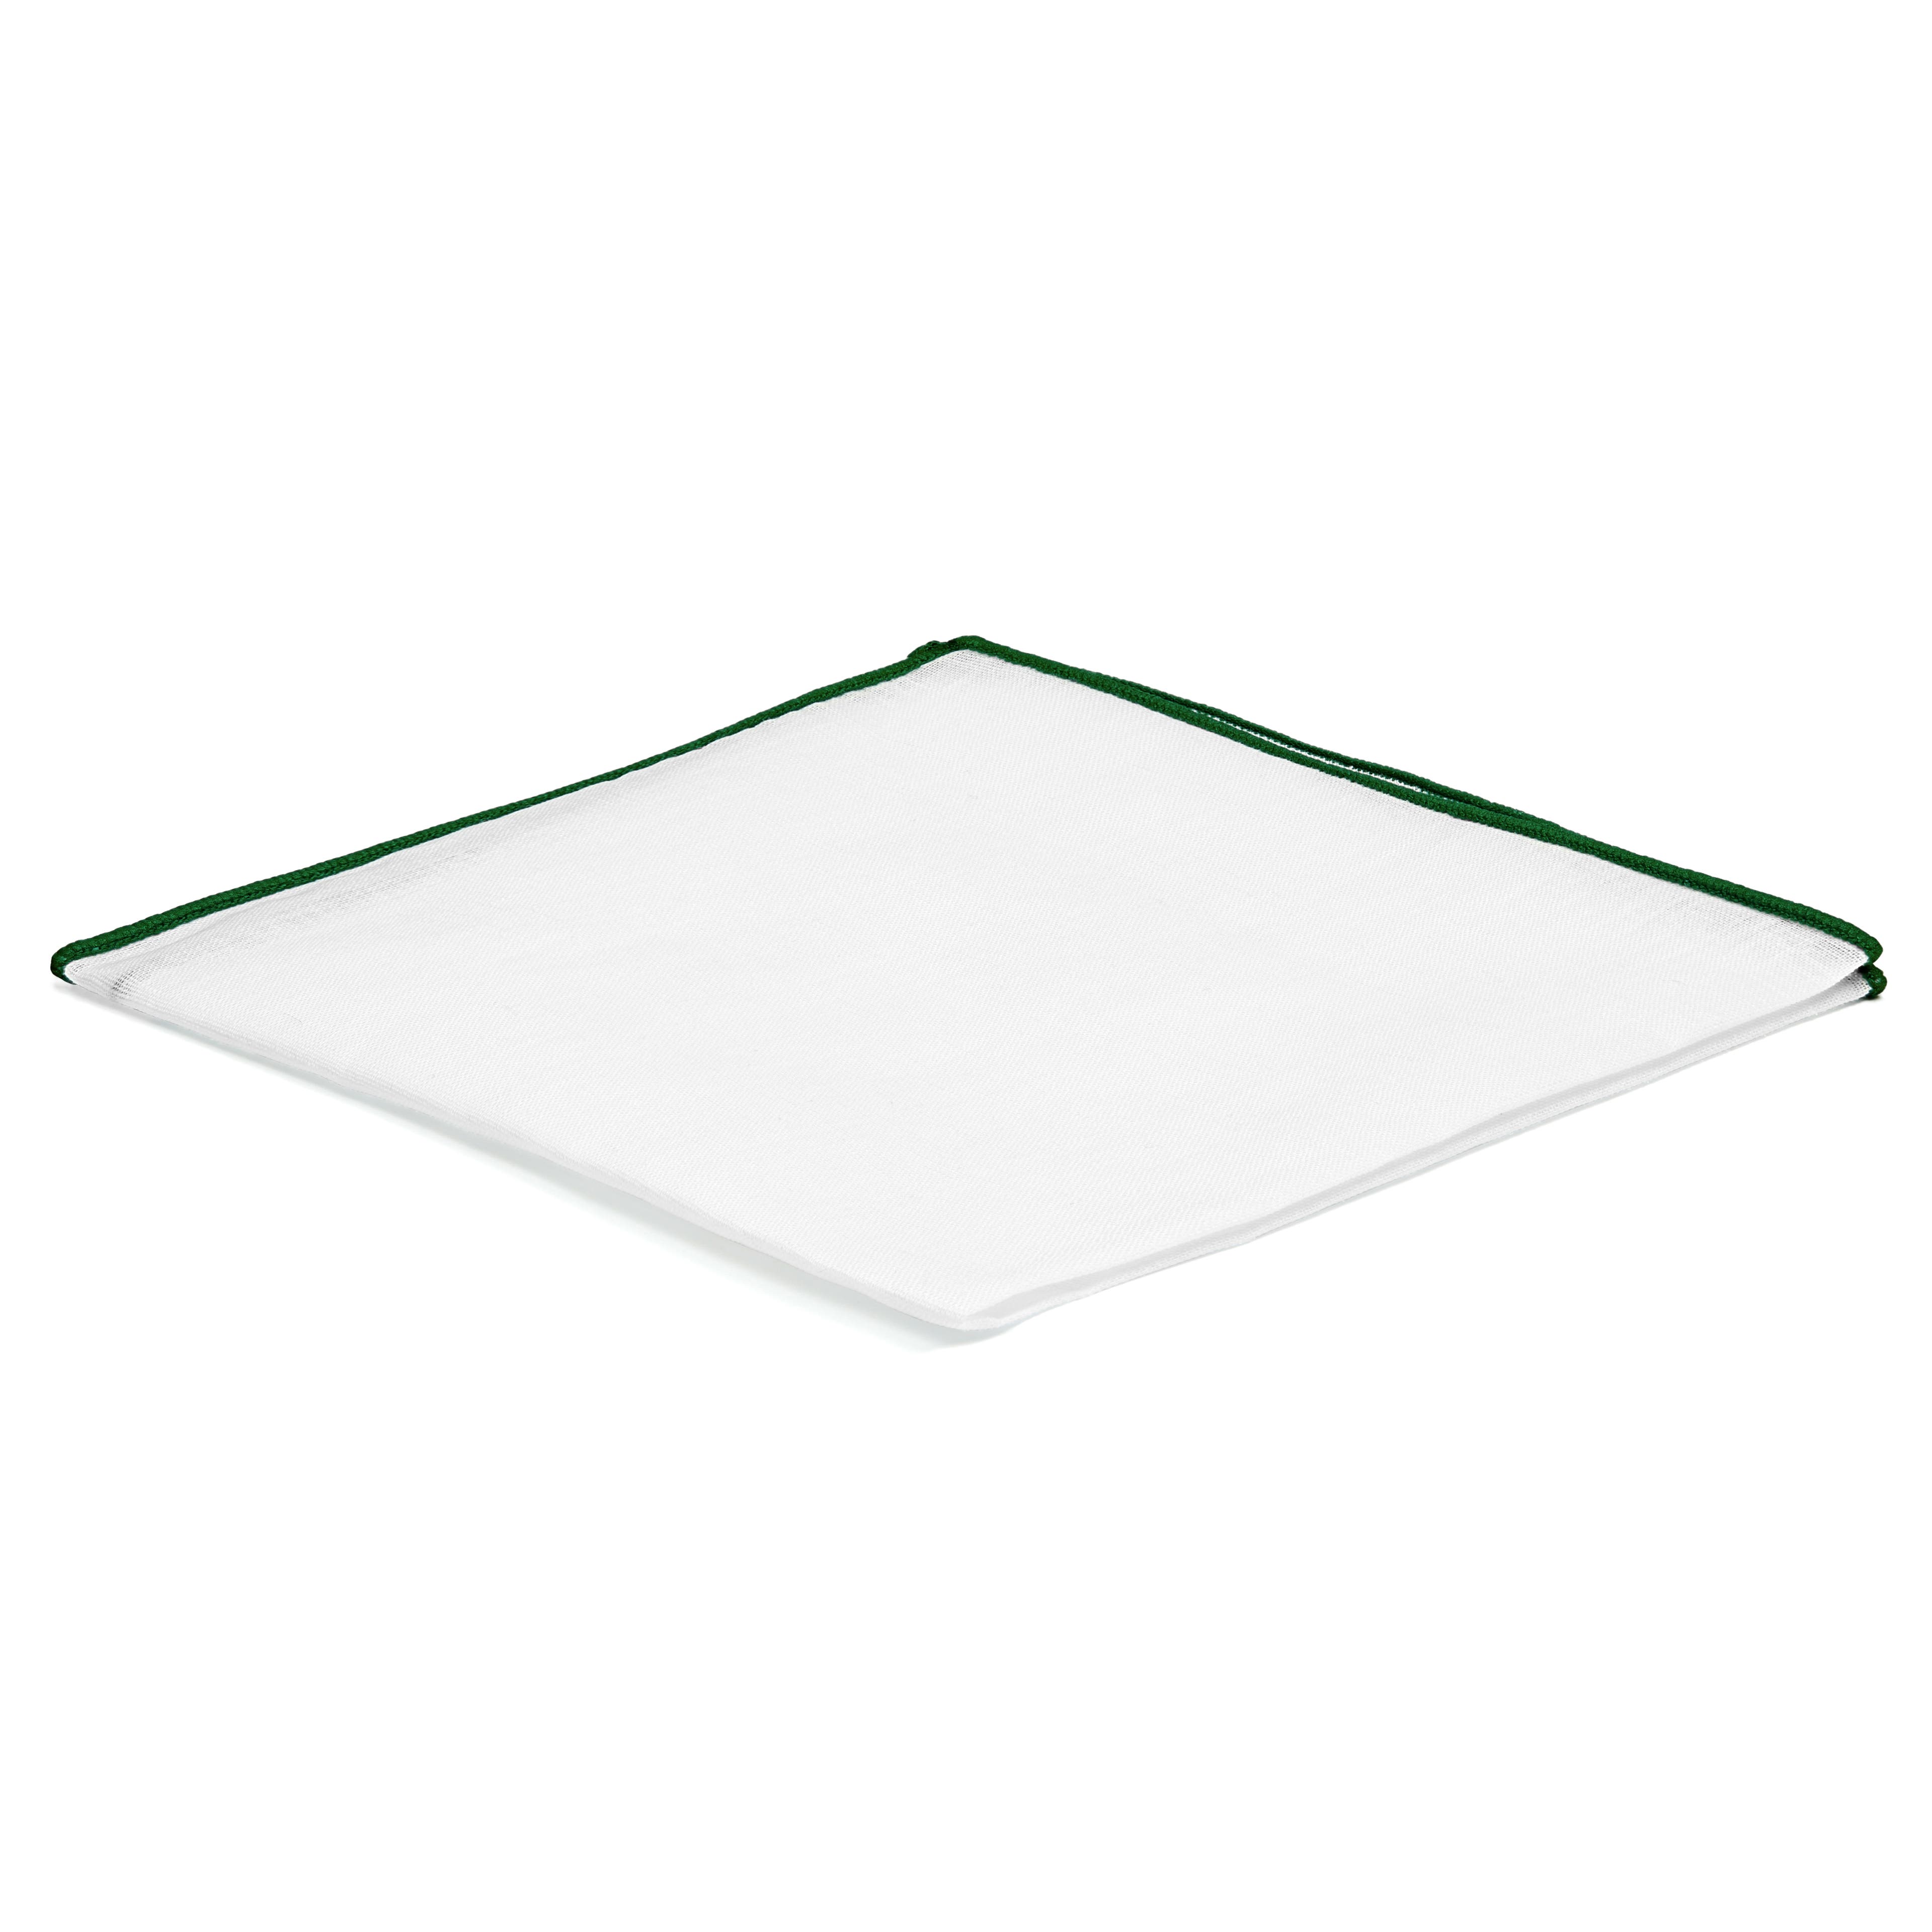 Fazzoletto da taschino bianco con bordi verdi